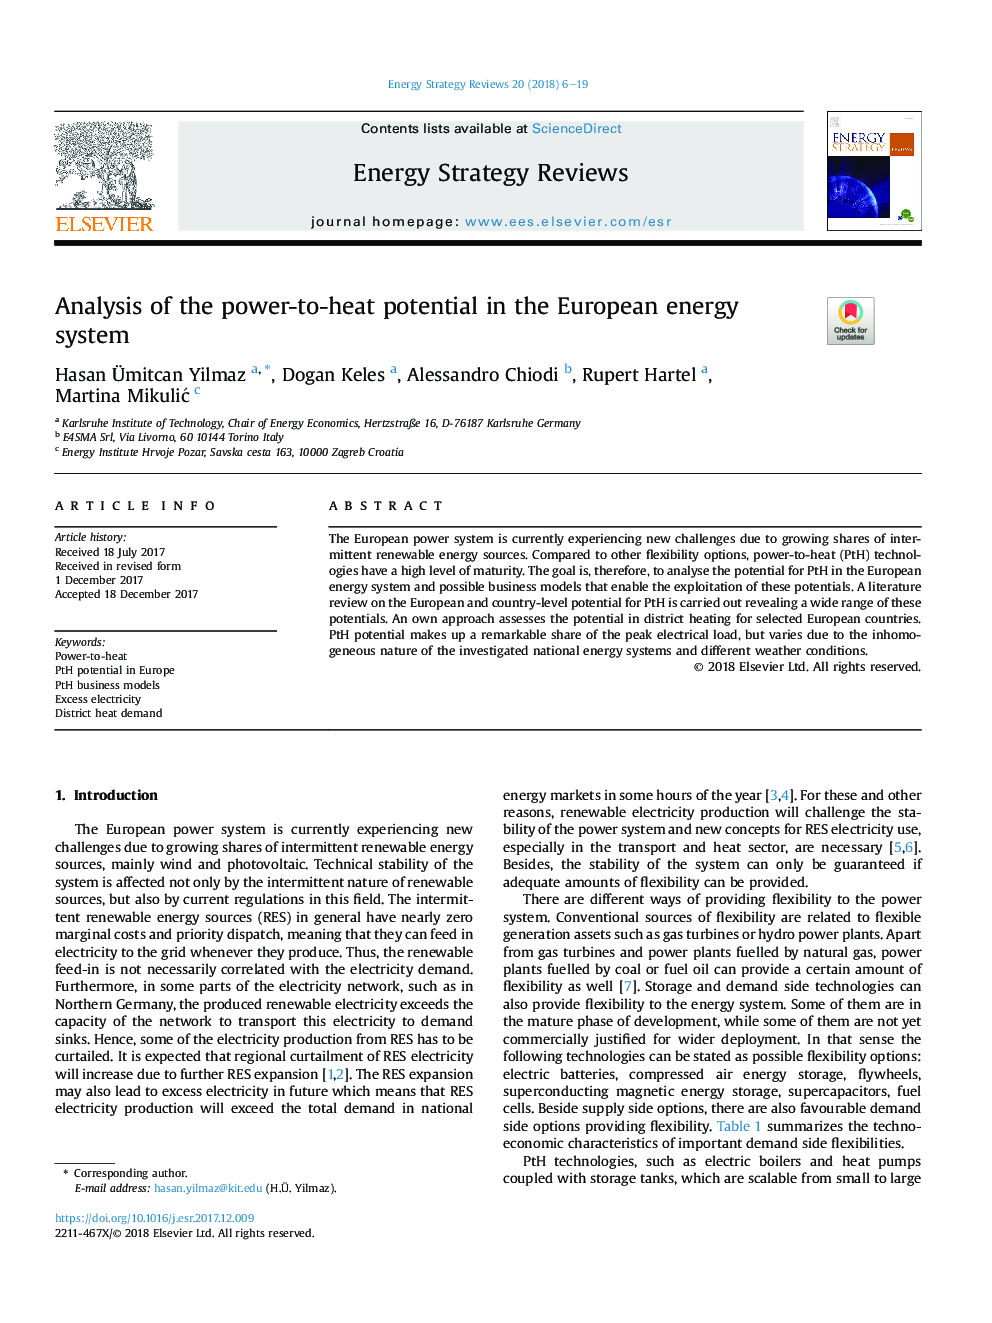 تجزیه و تحلیل پتانسیل قدرت به گرما در سیستم انرژی اروپا 